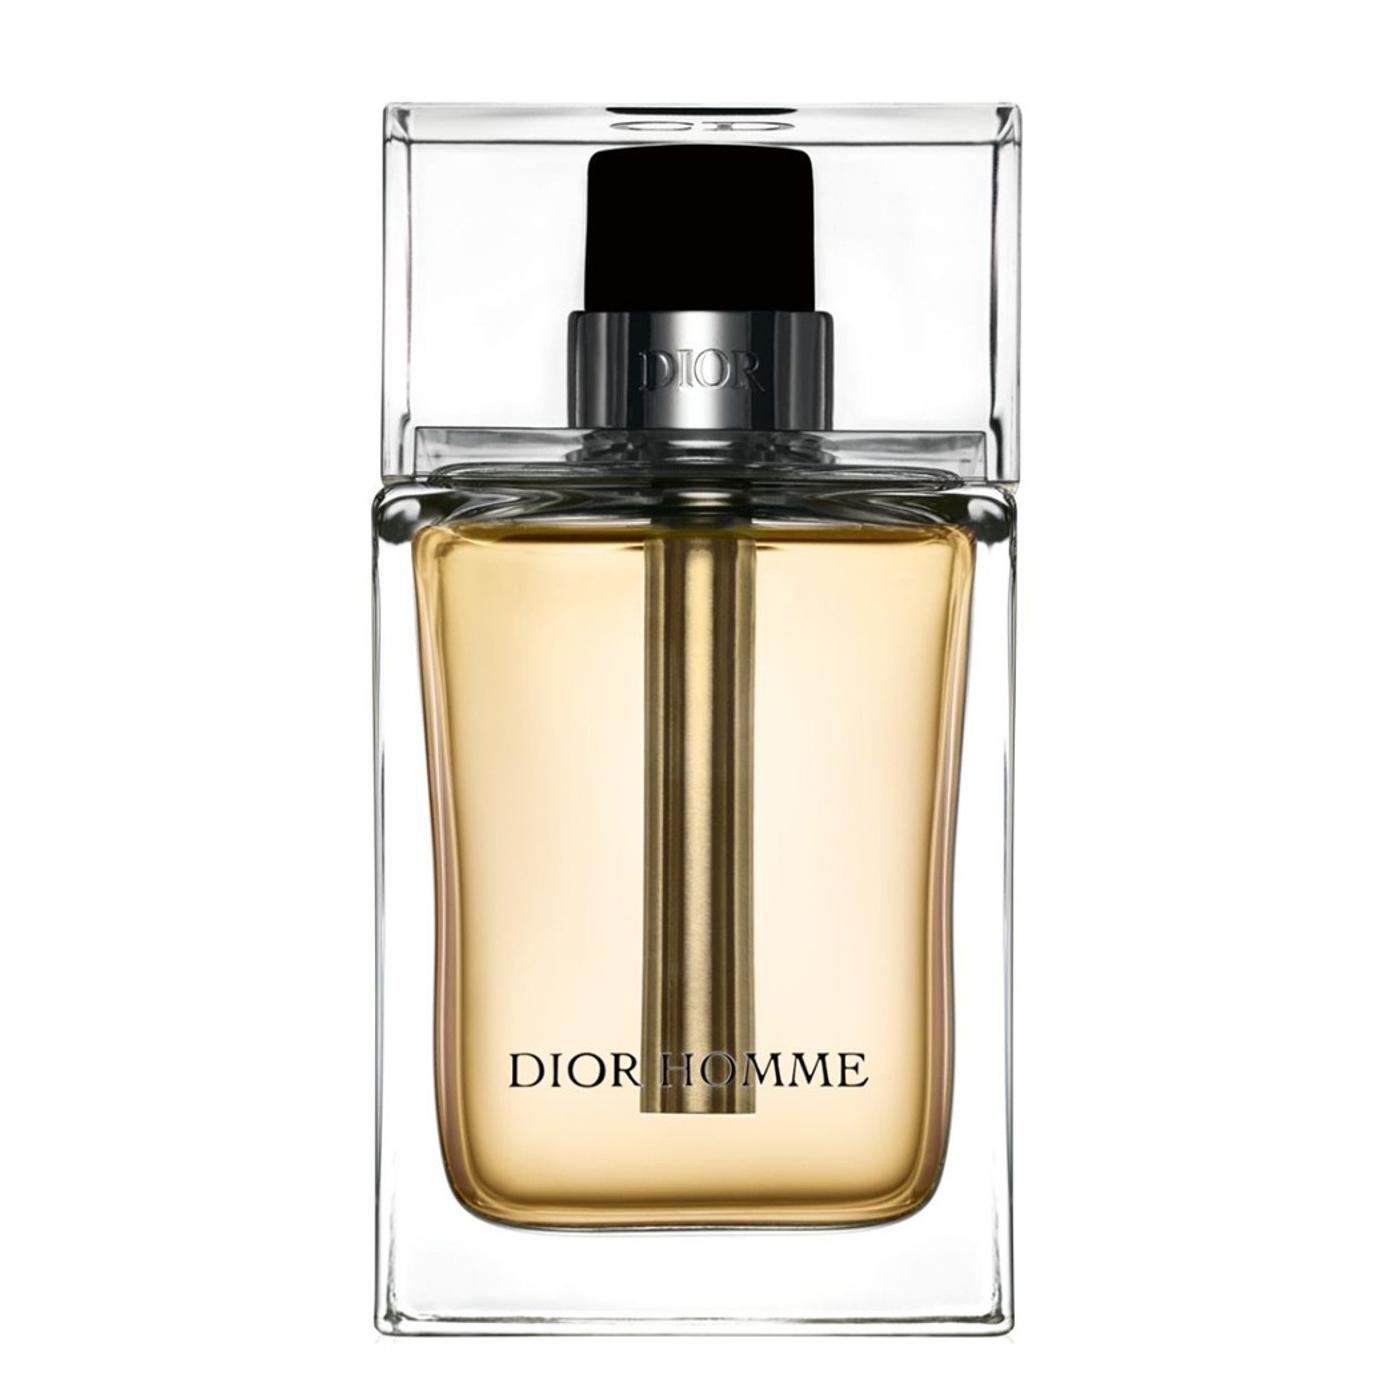 Christian Dior Homme For Men - E.N Trade LTD